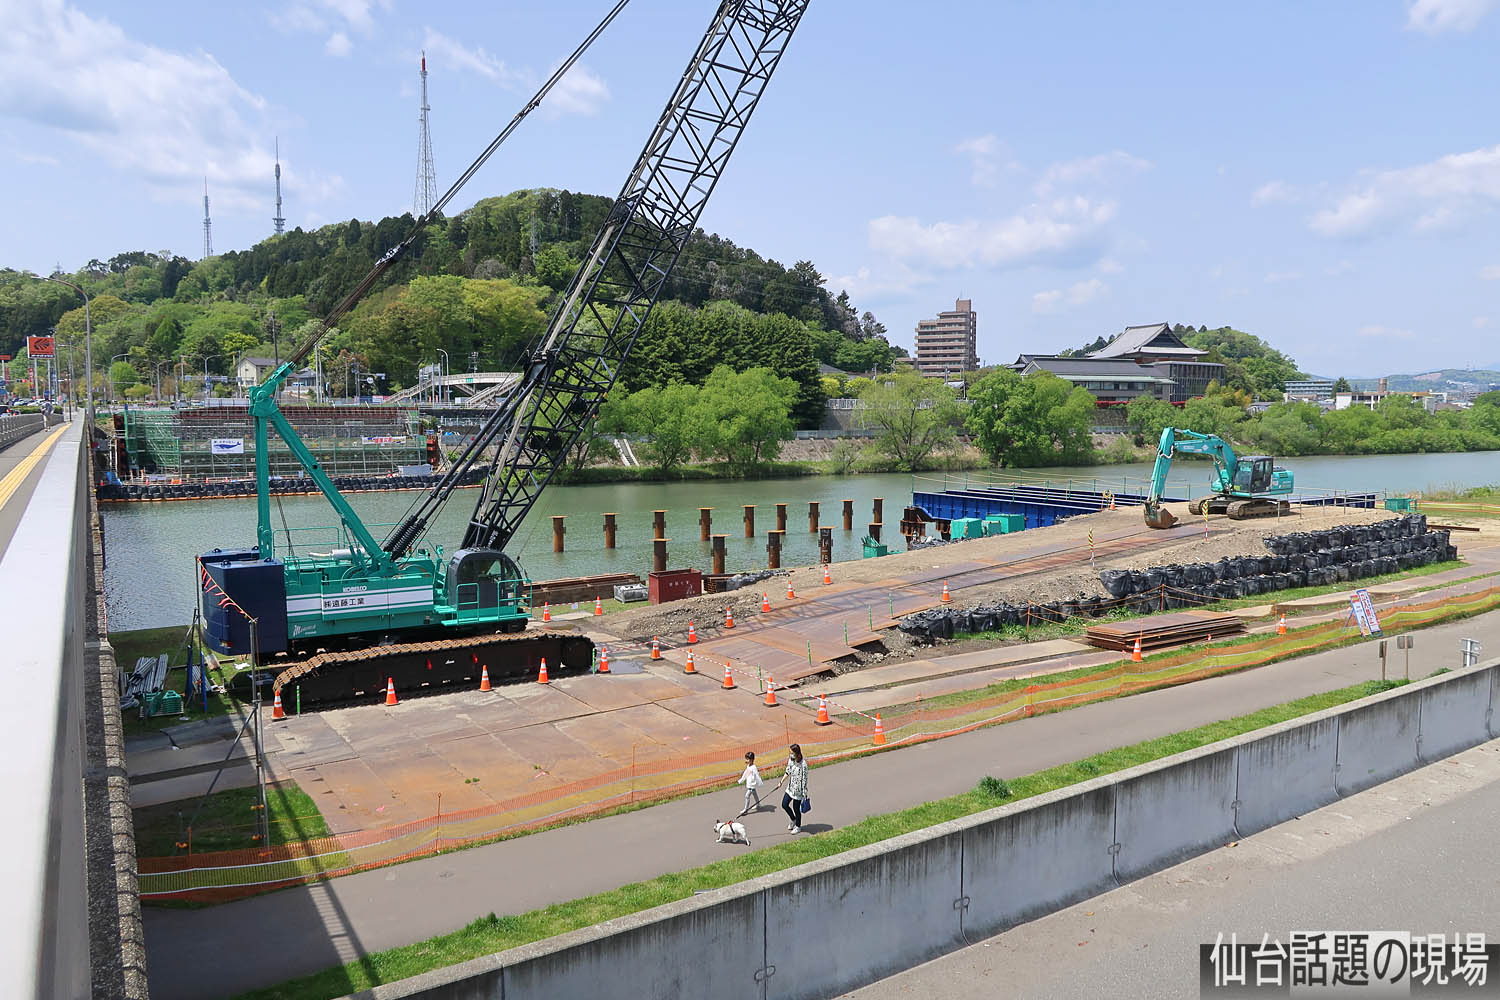 都市計画道路 宮沢根白石線の最新状況 その3 宮沢橋の架け替え工事 21年5月